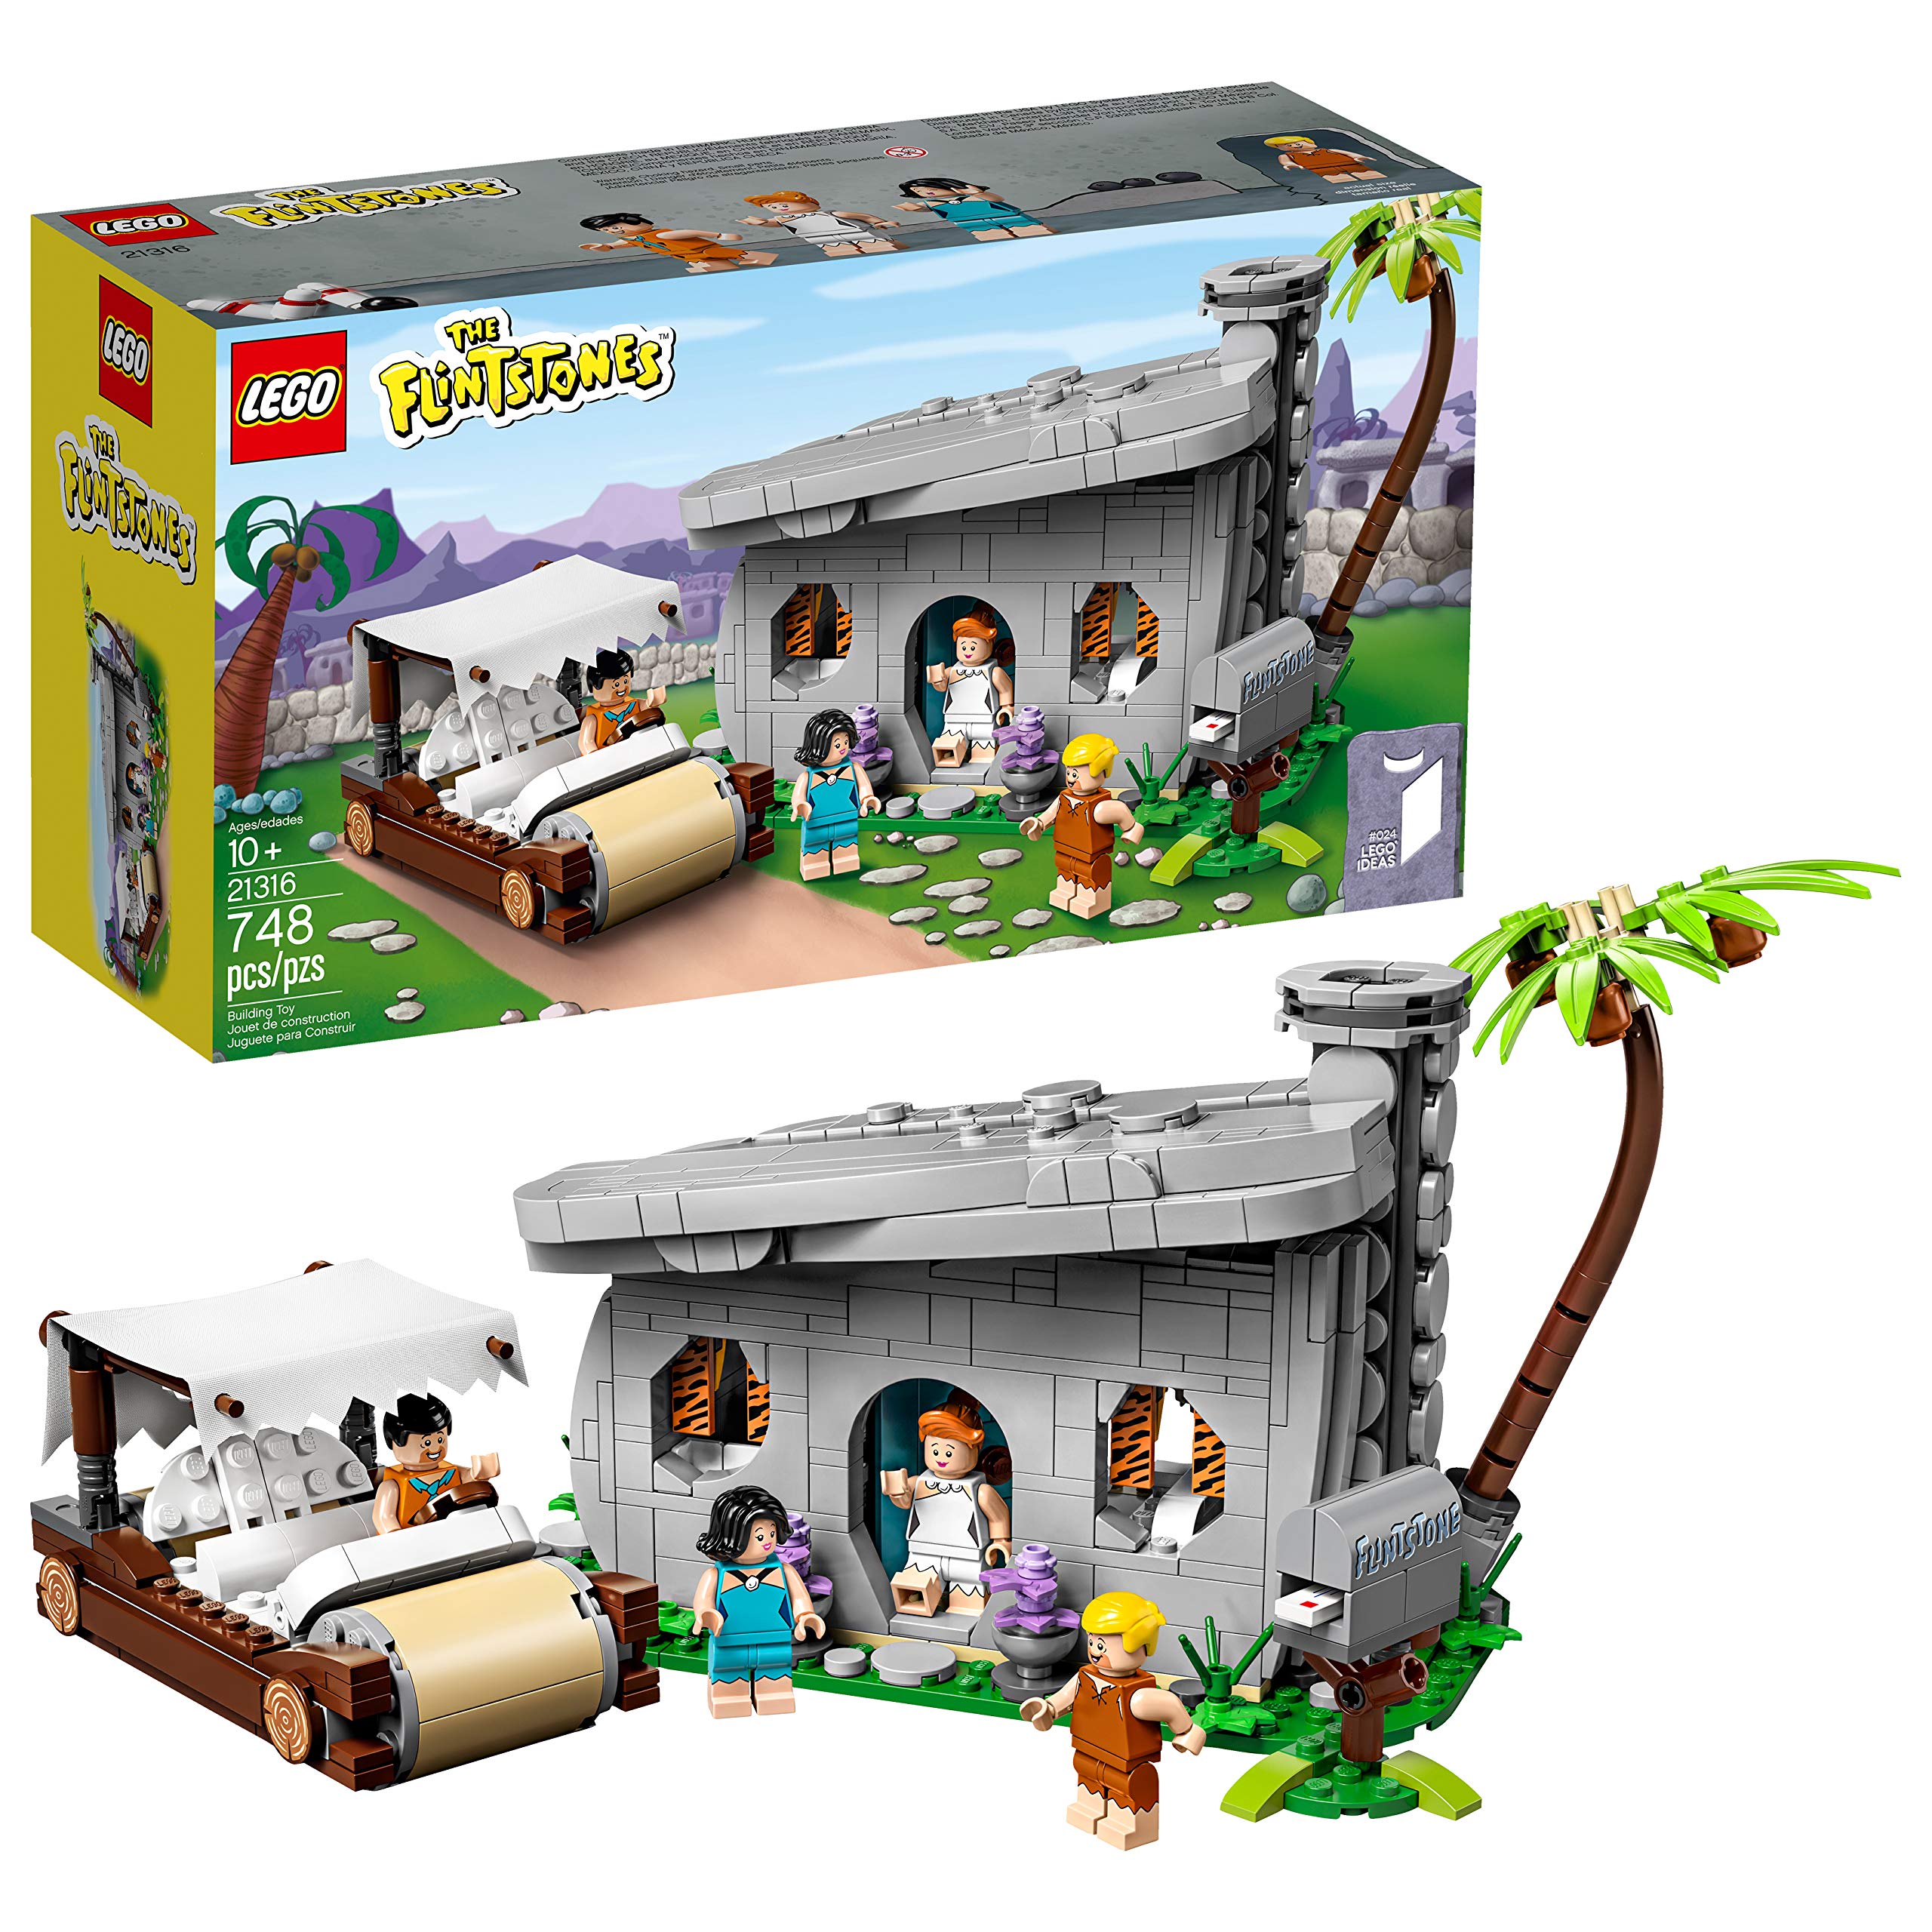 LEGO Ideas 21316 The Flintstones Building Kit (748Piece) (Like New, Open Box)